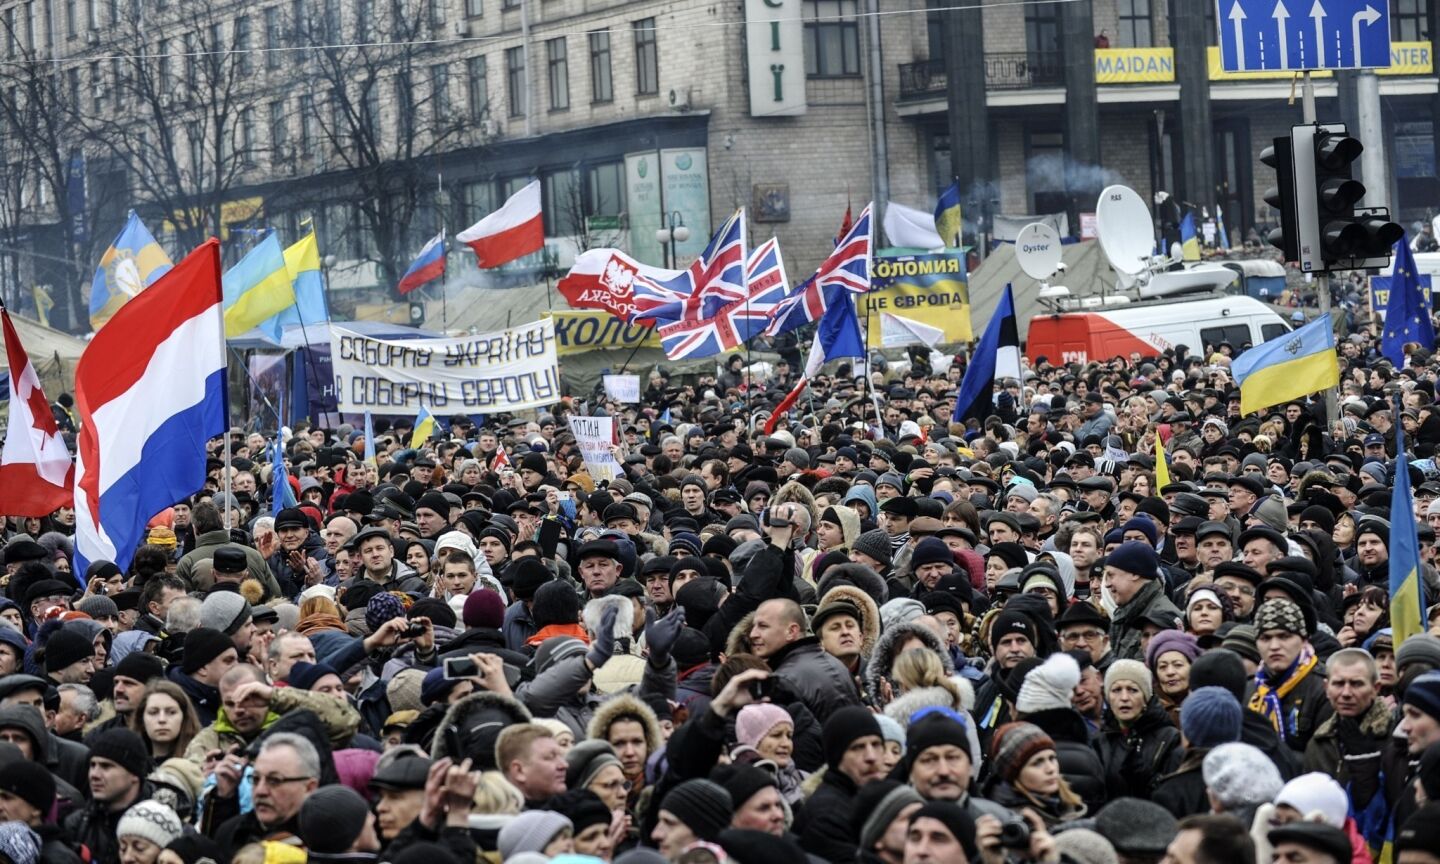 Kiev rally